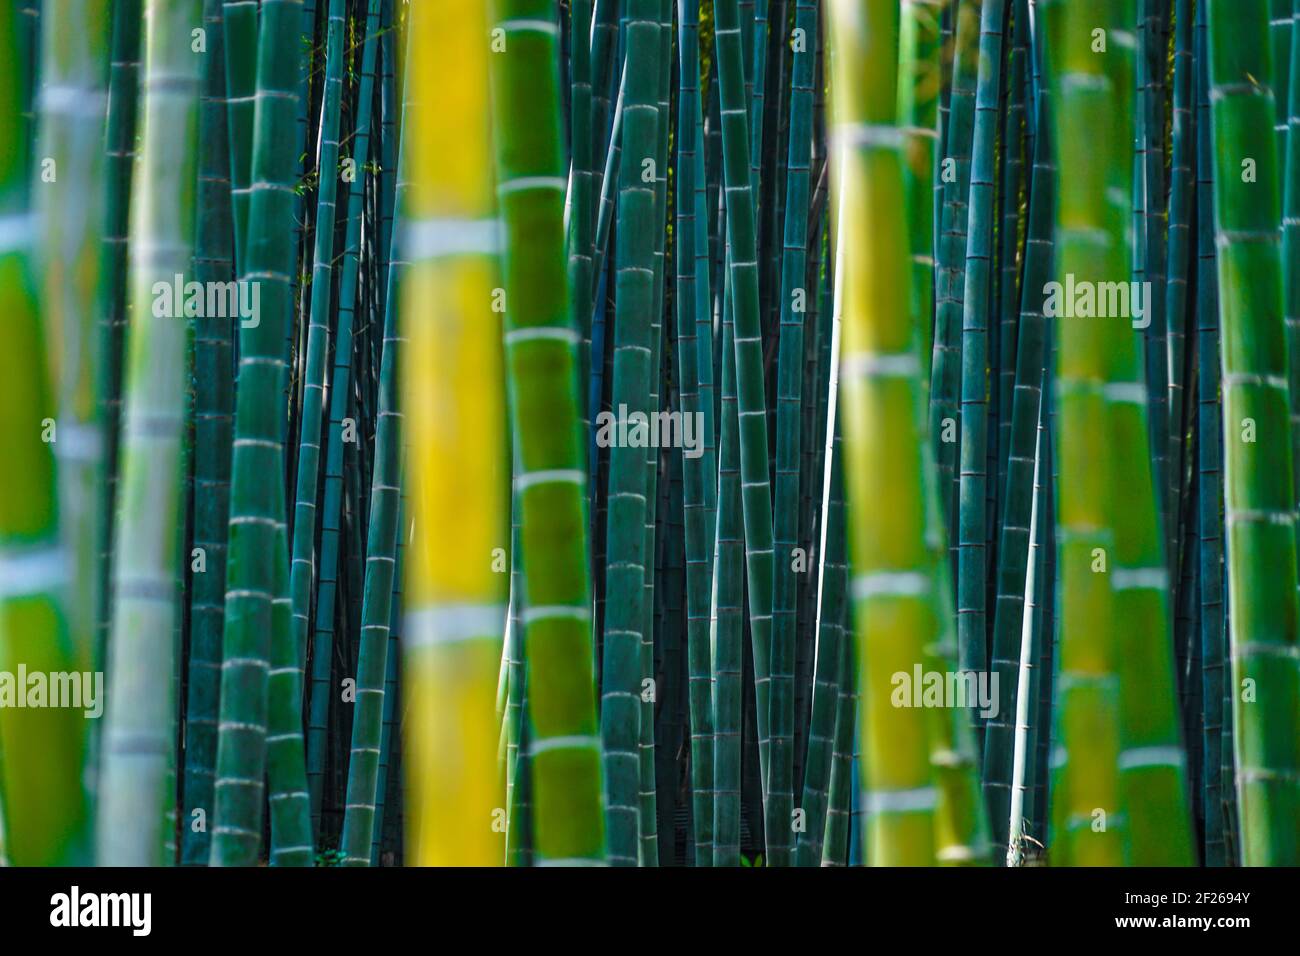 Kyoto Arashiyama bamboo forest Stock Photo